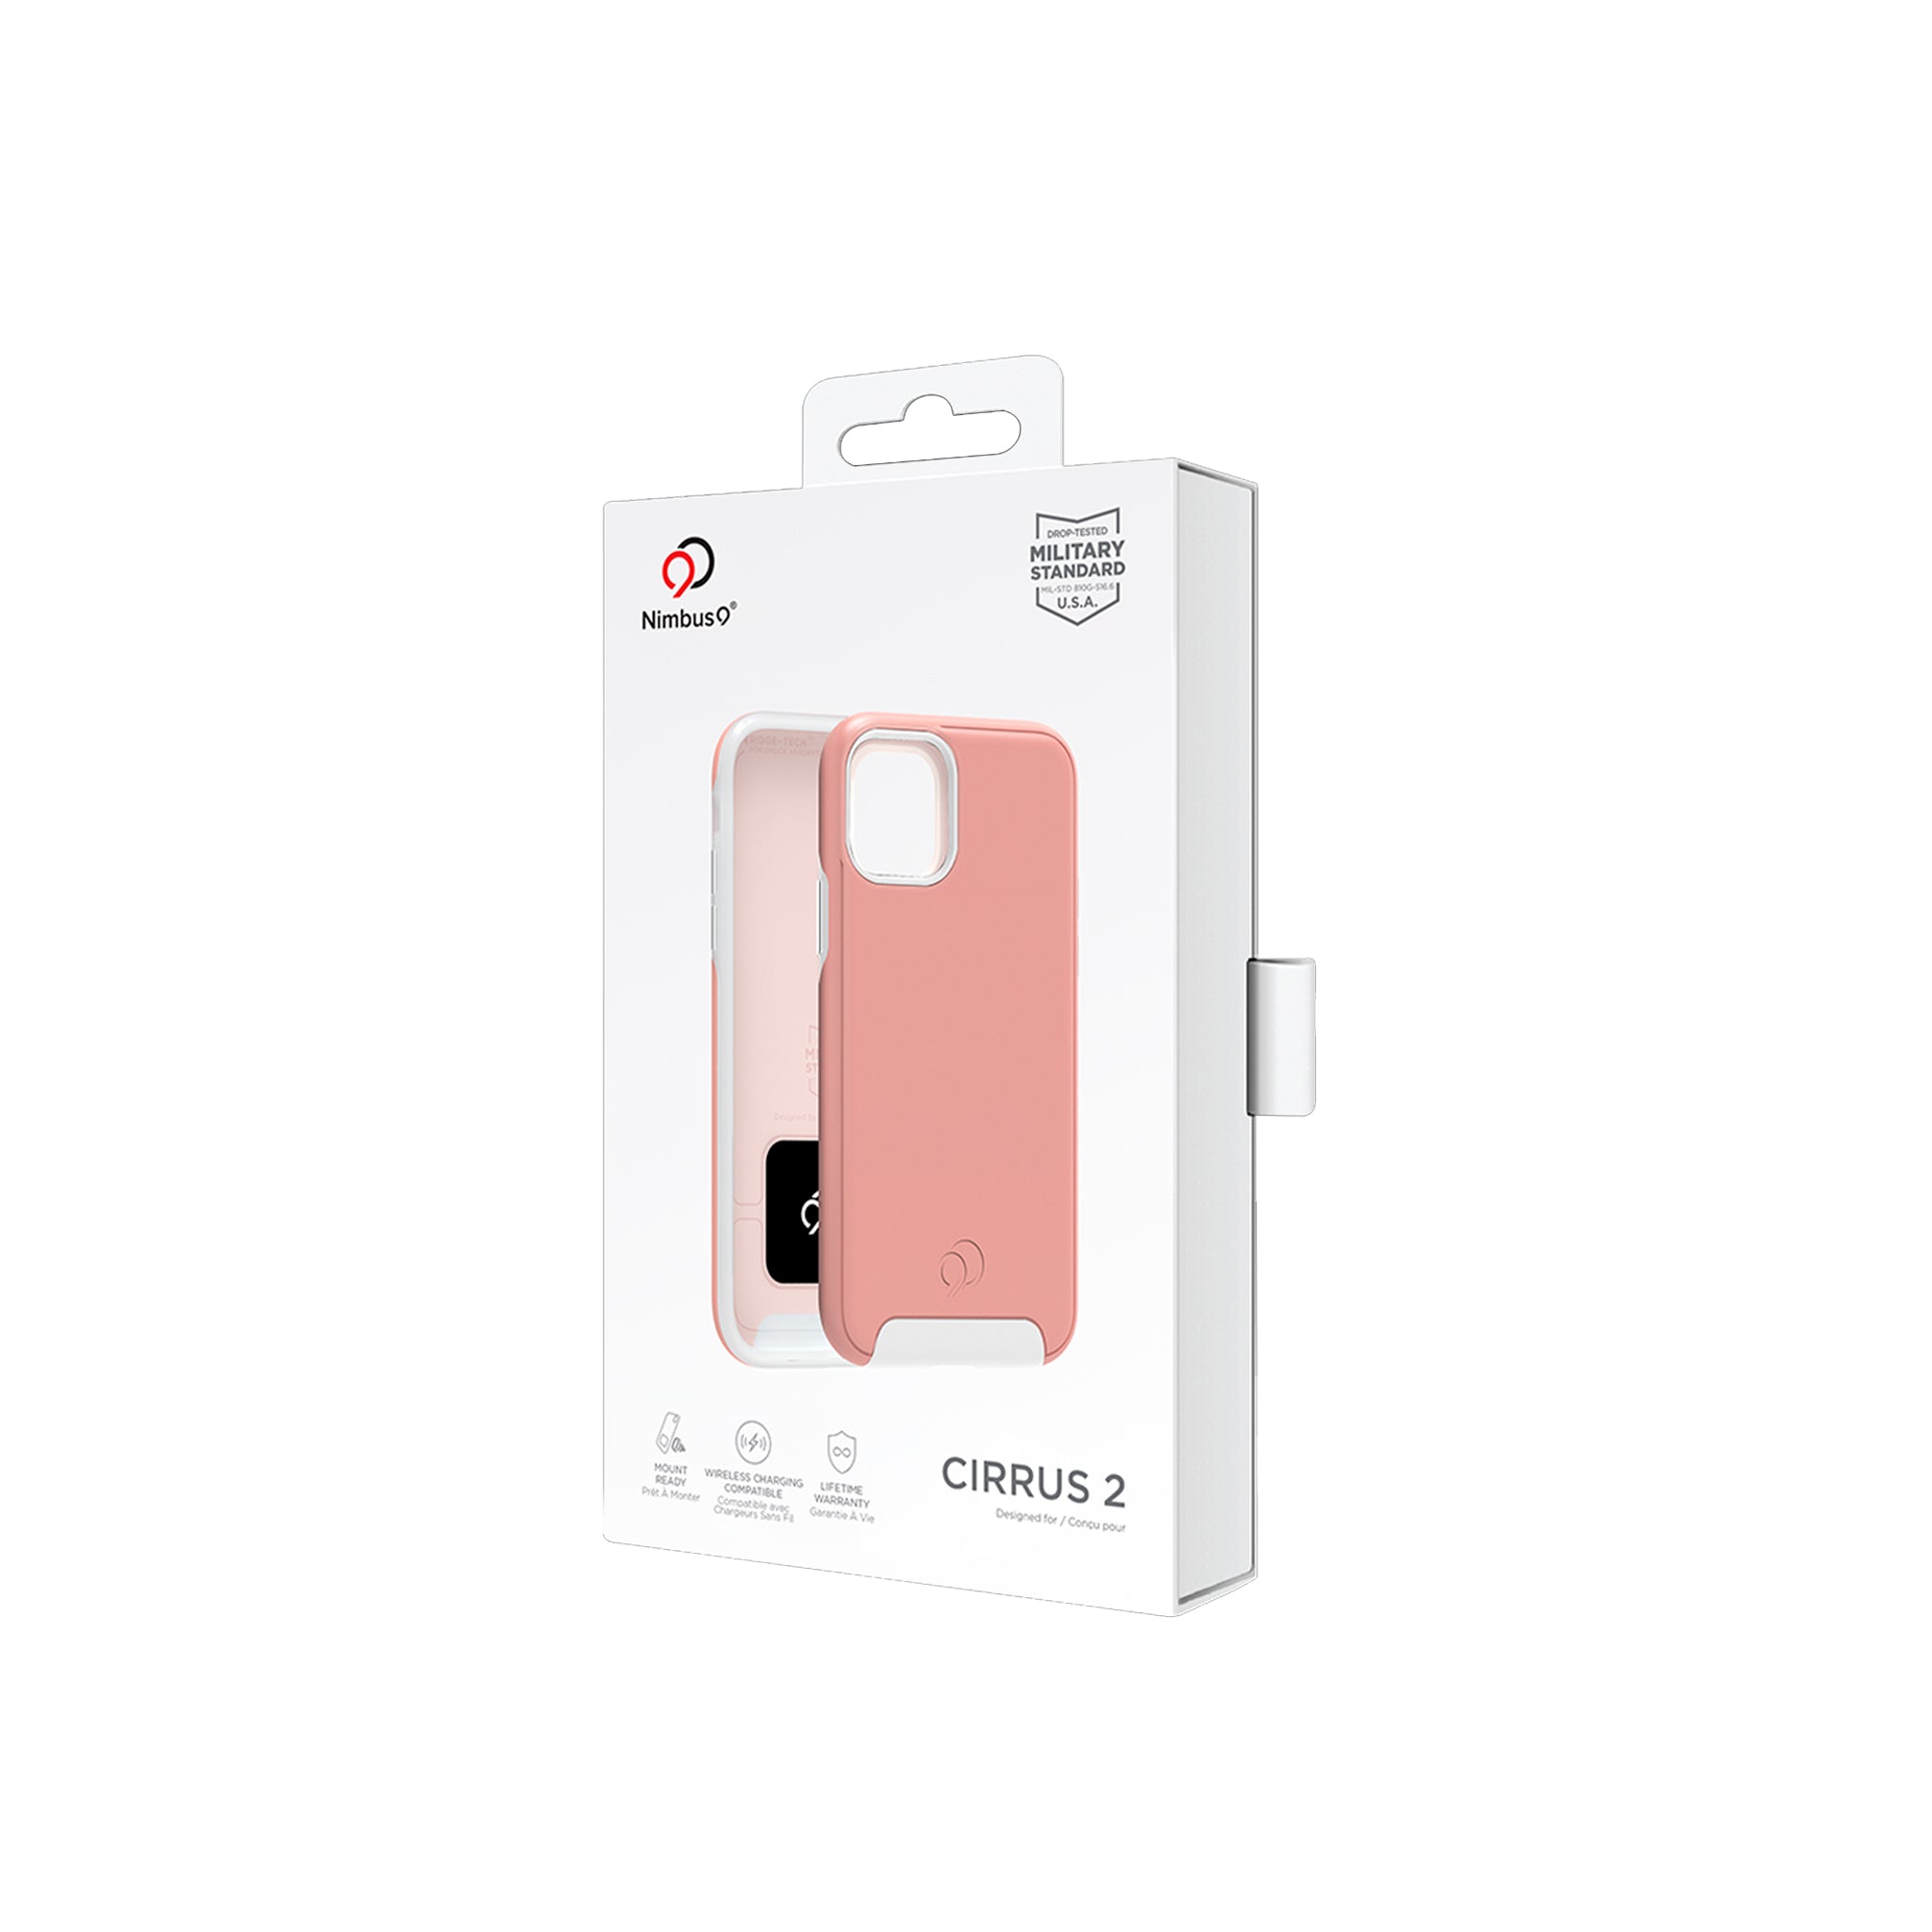 Nimbus9 - Cirrus 2 Case For Apple Iphone 11 - Rose Clear